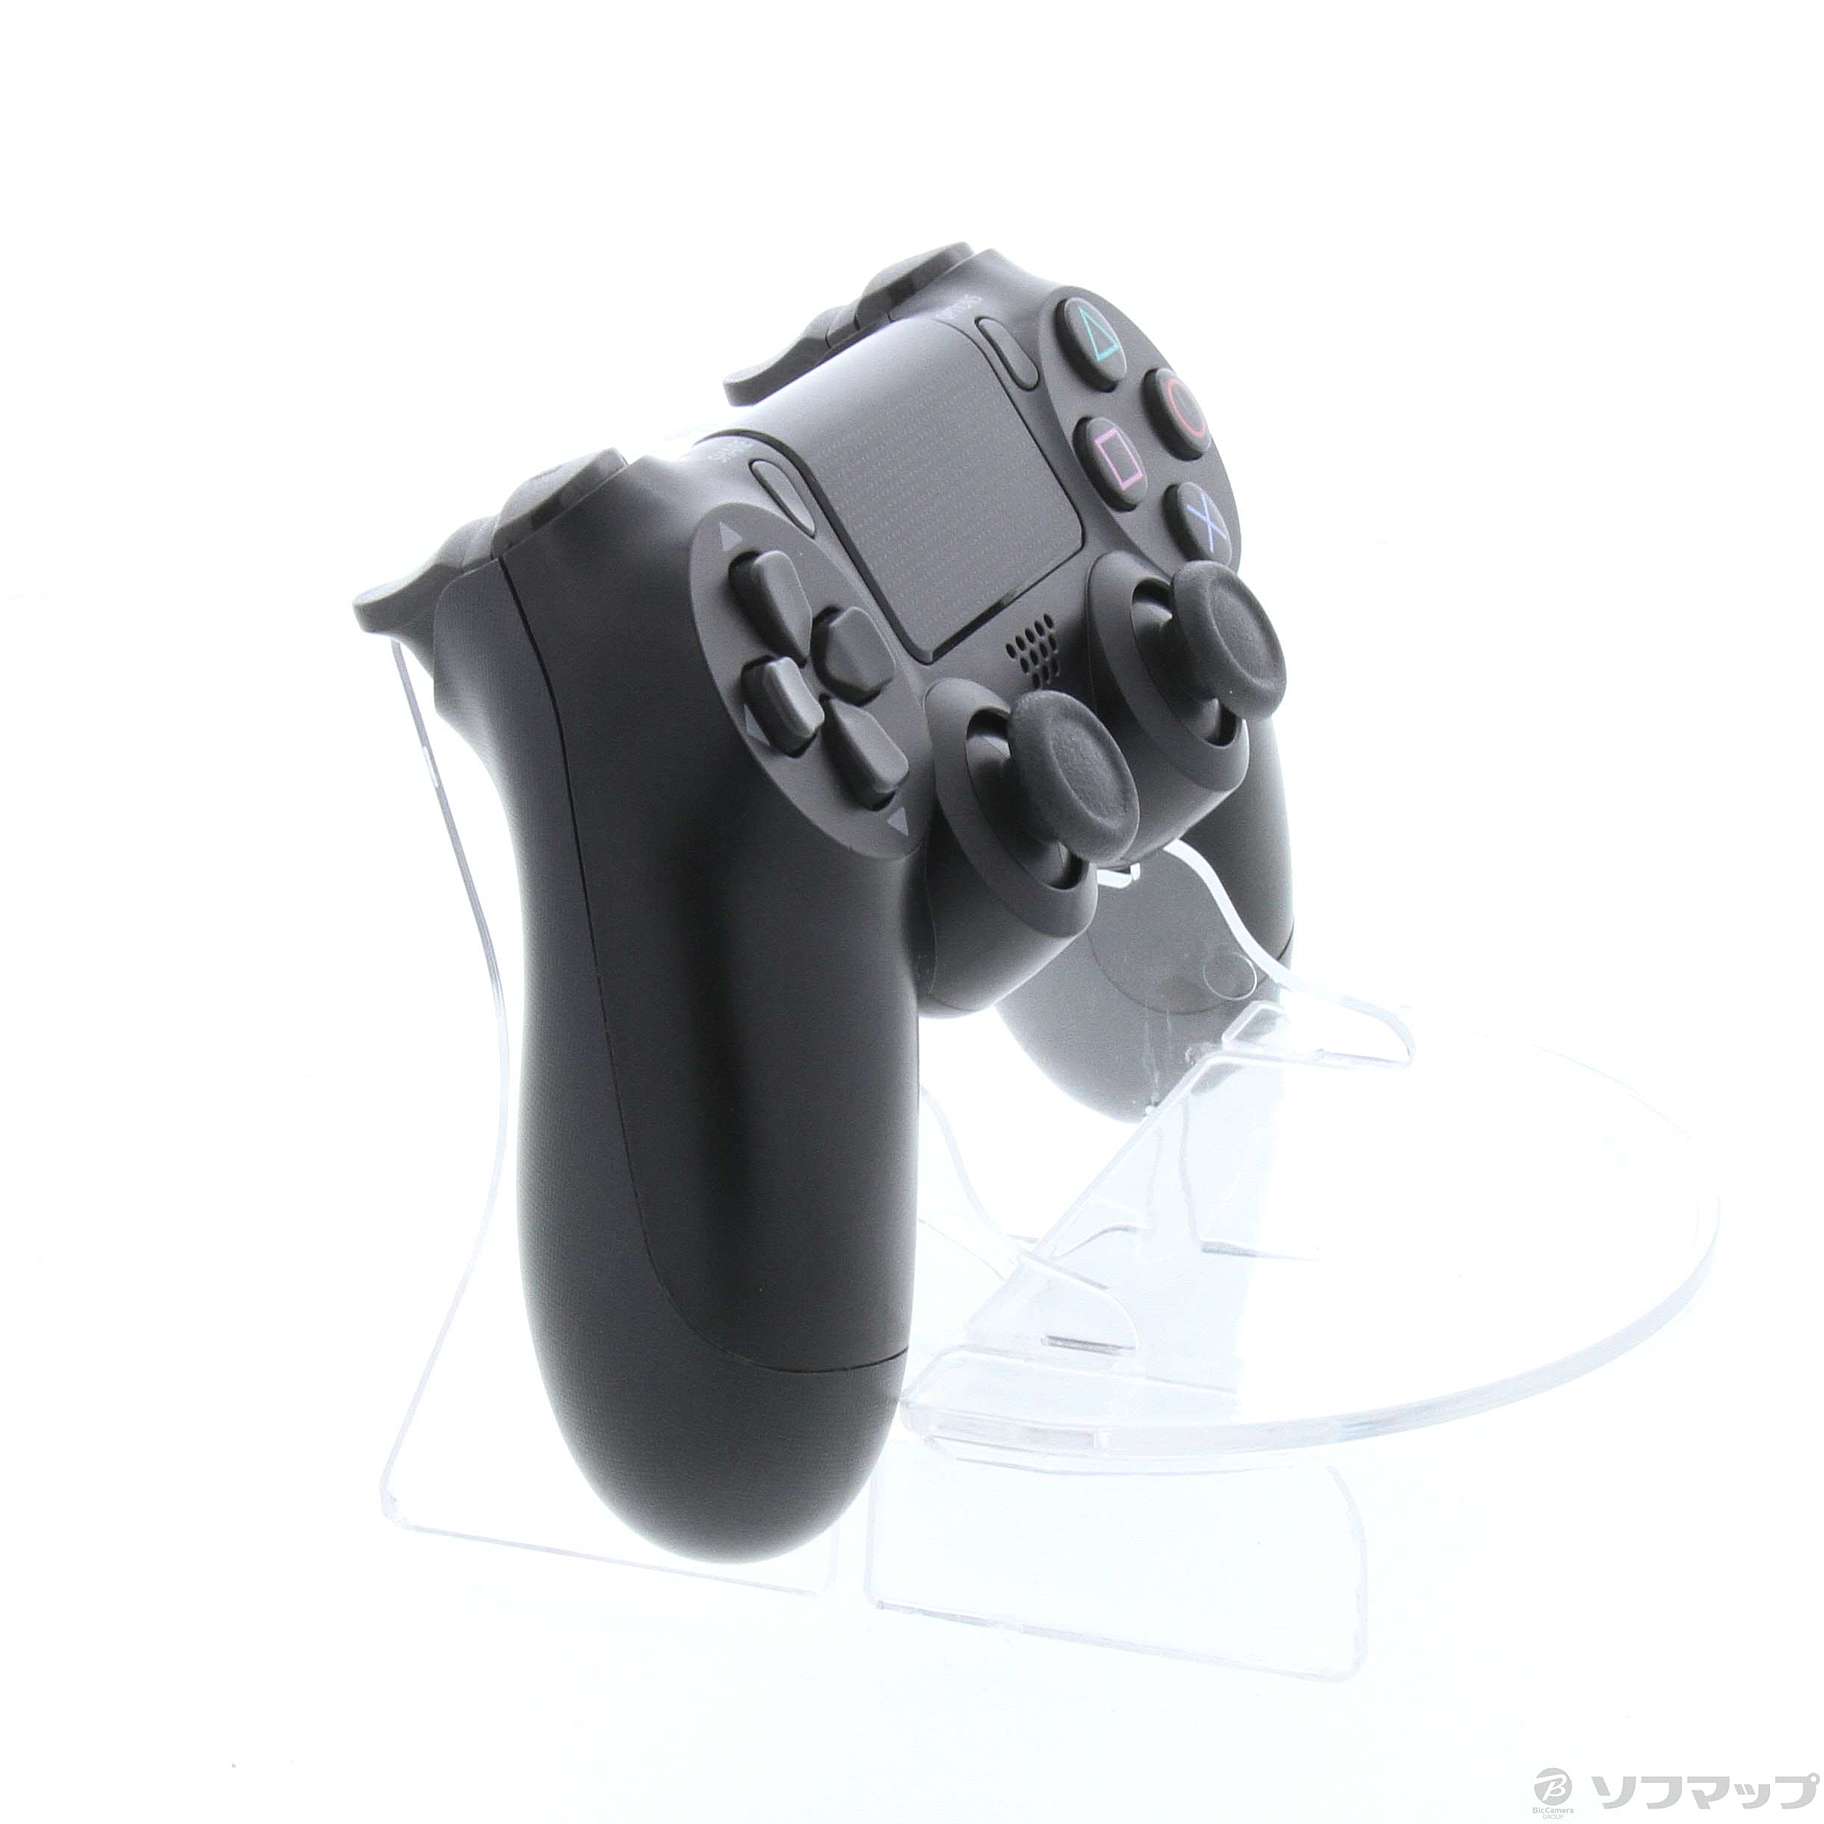 【新品未】PS4 ワイヤレスコントローラーDUALSHOCK4 ジェットブラック